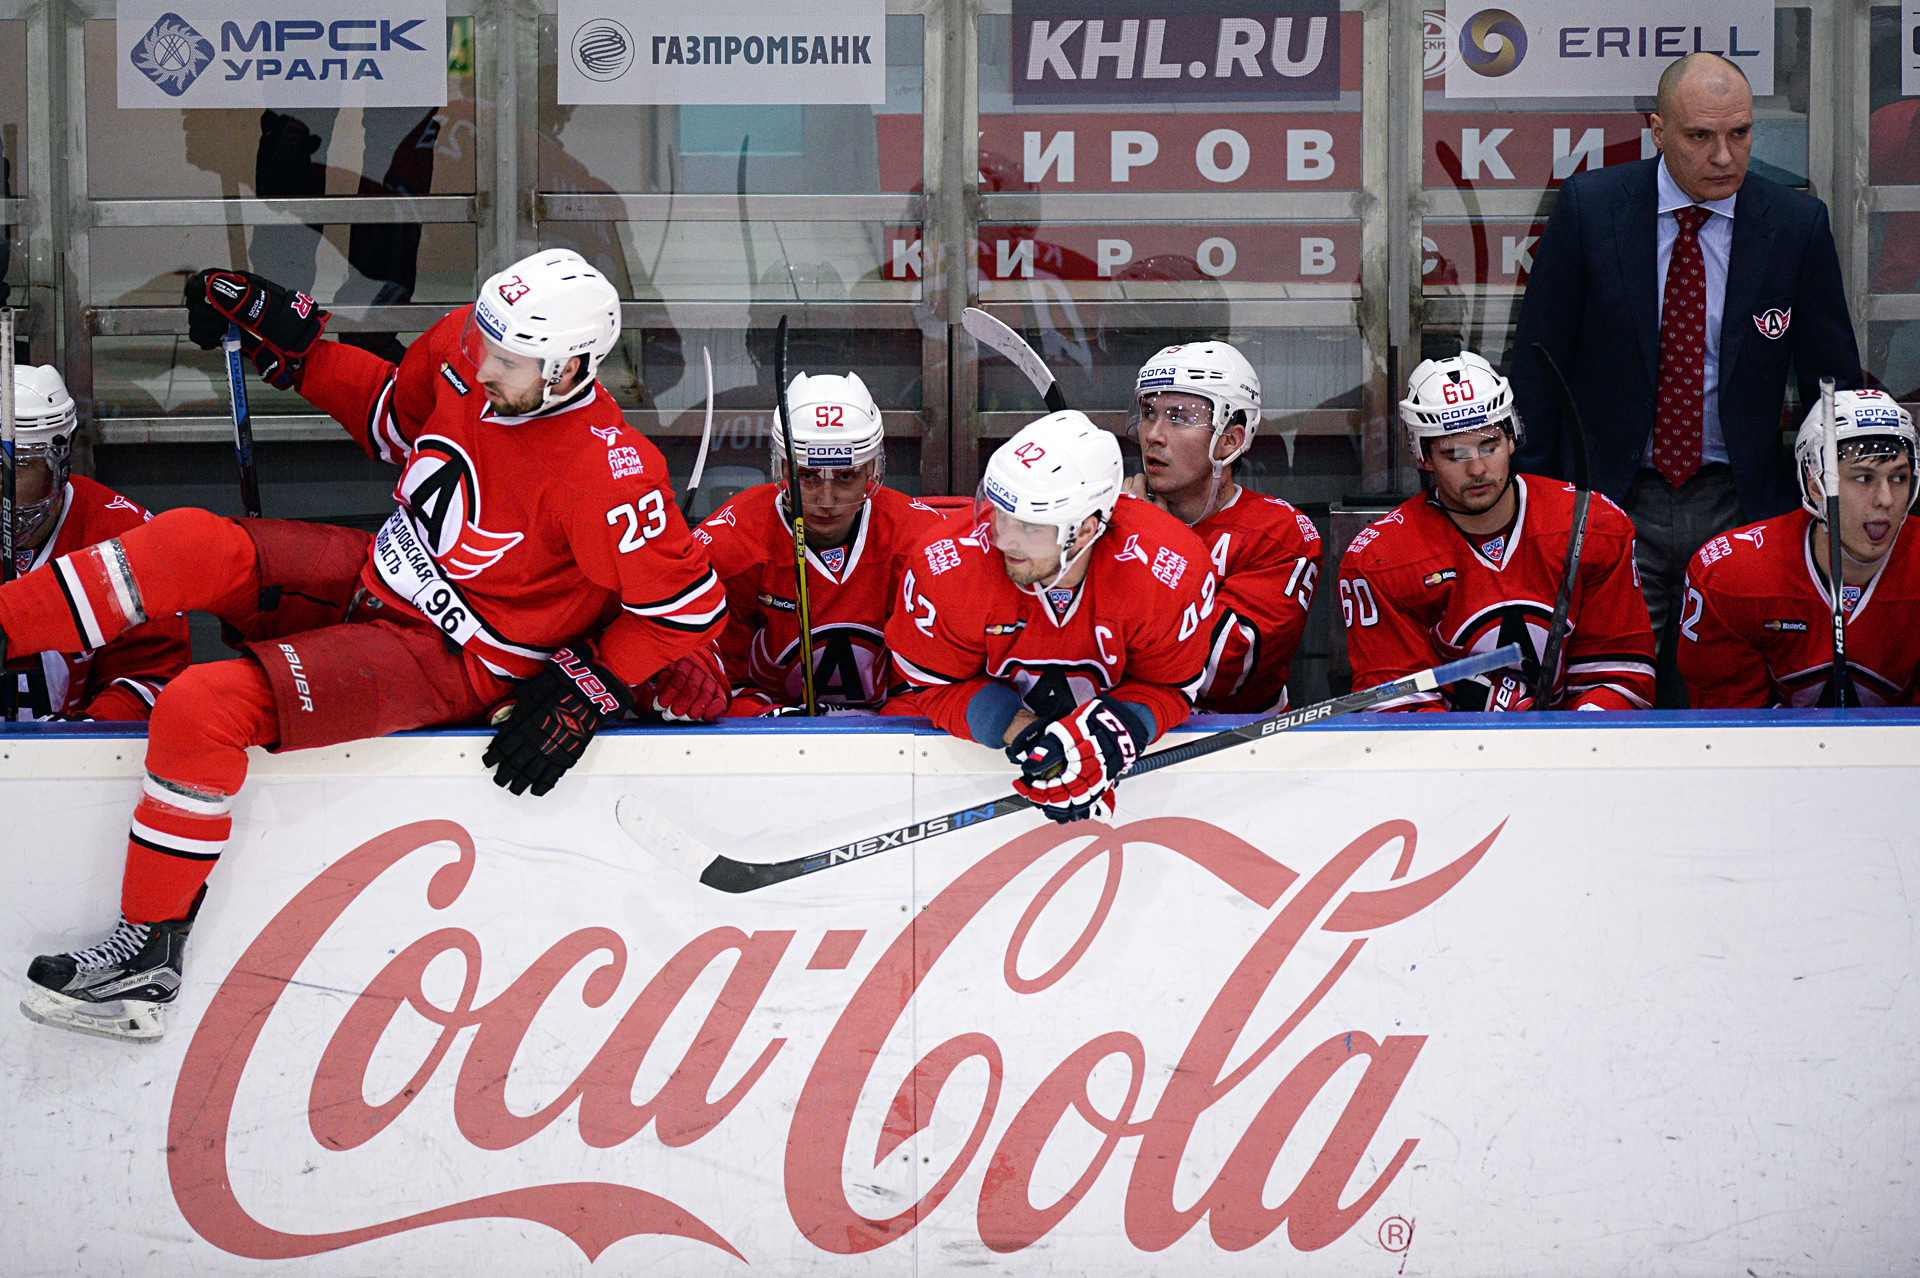 Coca Cola, yang dikenal karena dukungannya terhadap acara olahraga, adalah mitra dari Liga Hoki Kontinental (KHL) yang berkantor pusat di Moskow. Menjadi minuman resmi dari KHL memicu dorongan ekstra untuk citranya di negara tersebut.